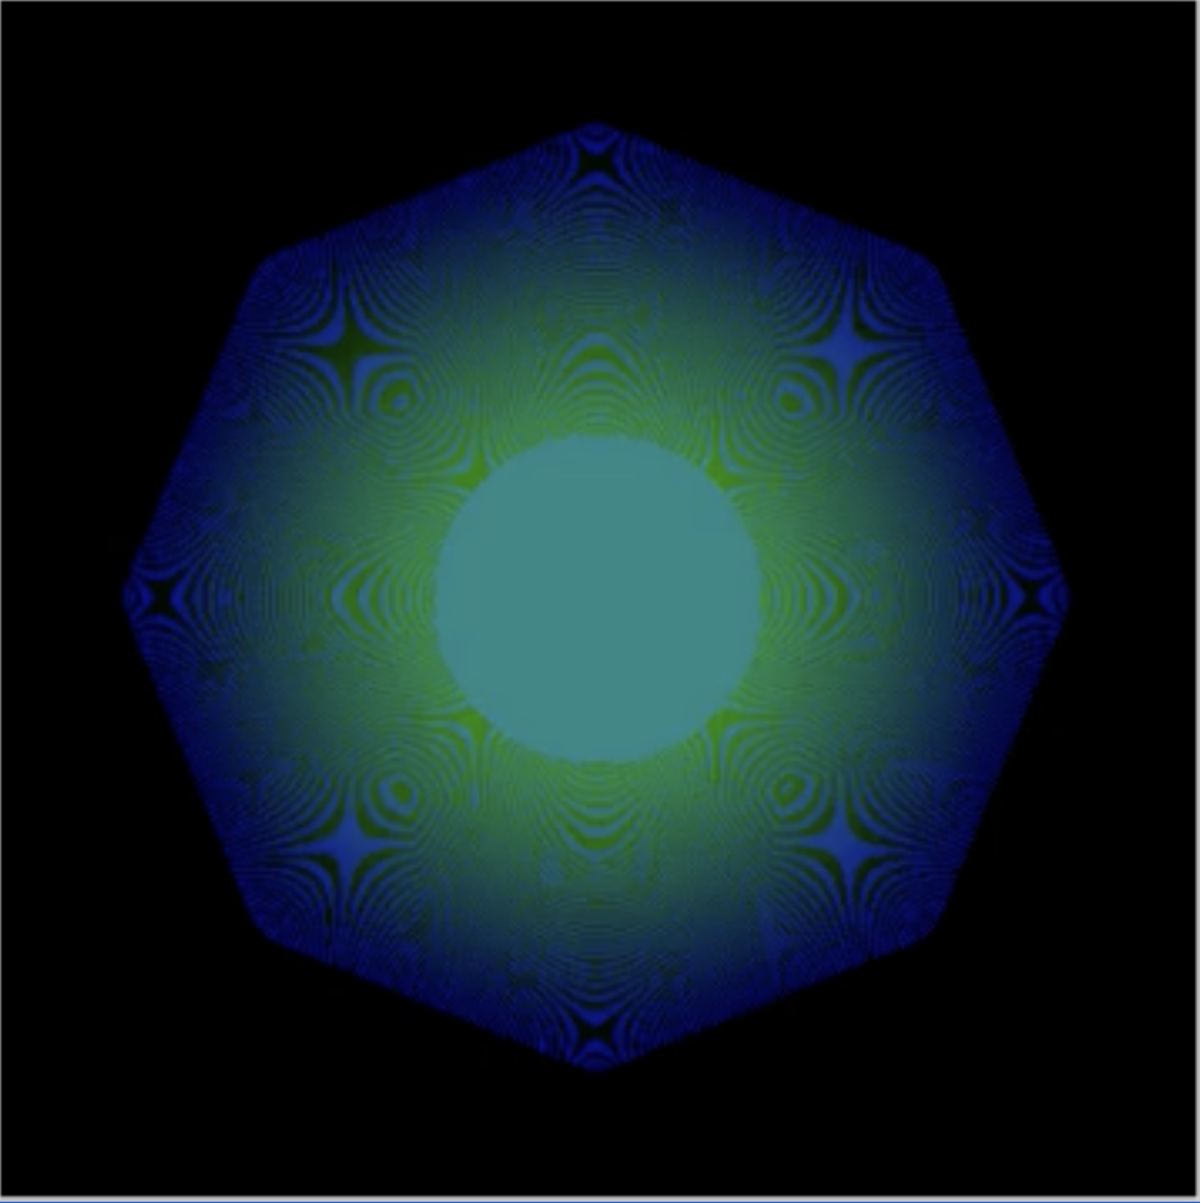 Un alambic du Quantum NFT, un point bleu-vert pixélisé.